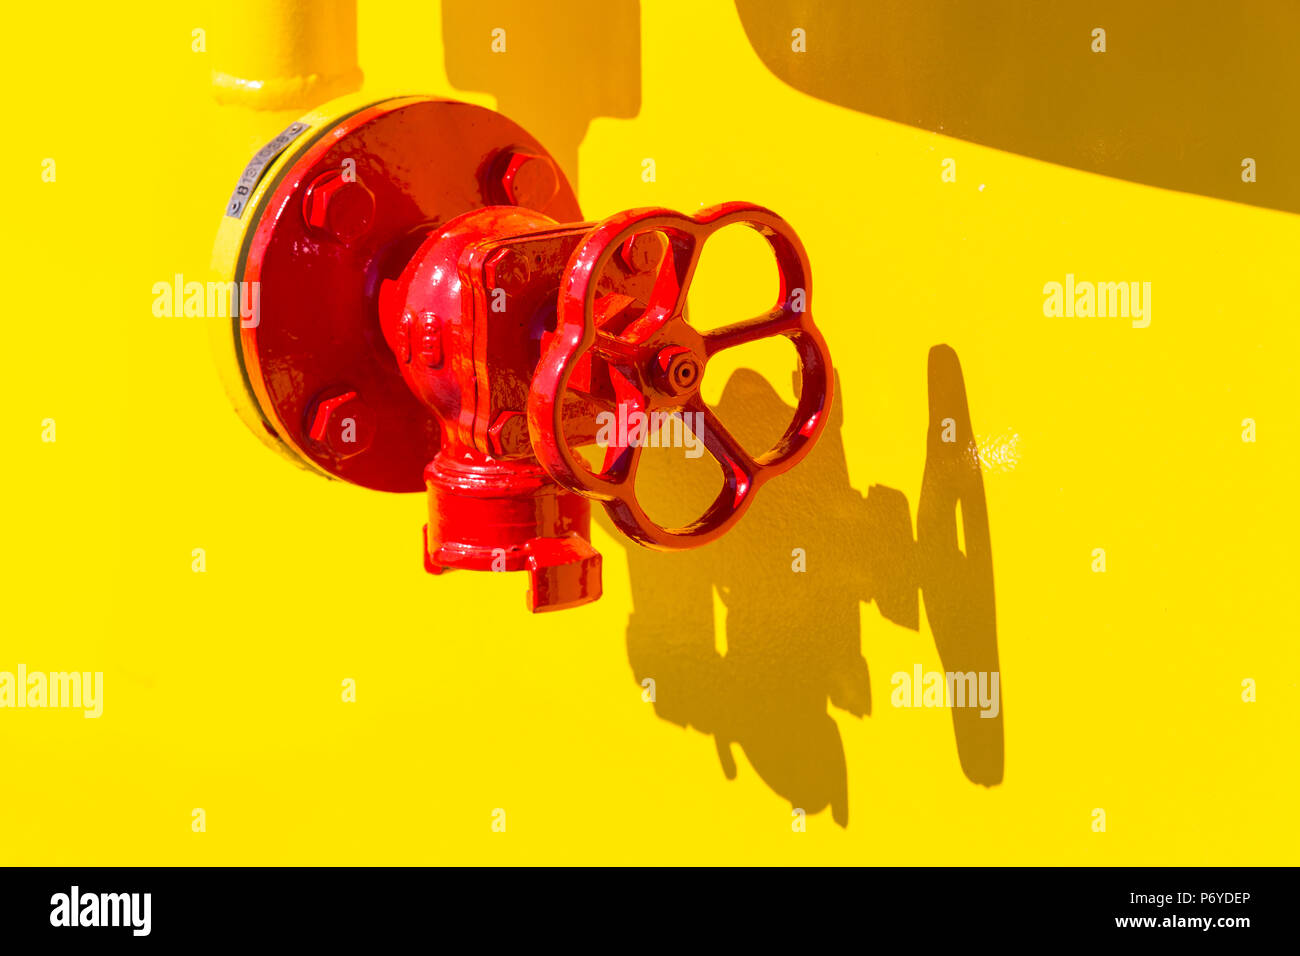 La vibrante maniglia rossa in condizioni di luce solare intensa su sfondo giallo Foto Stock